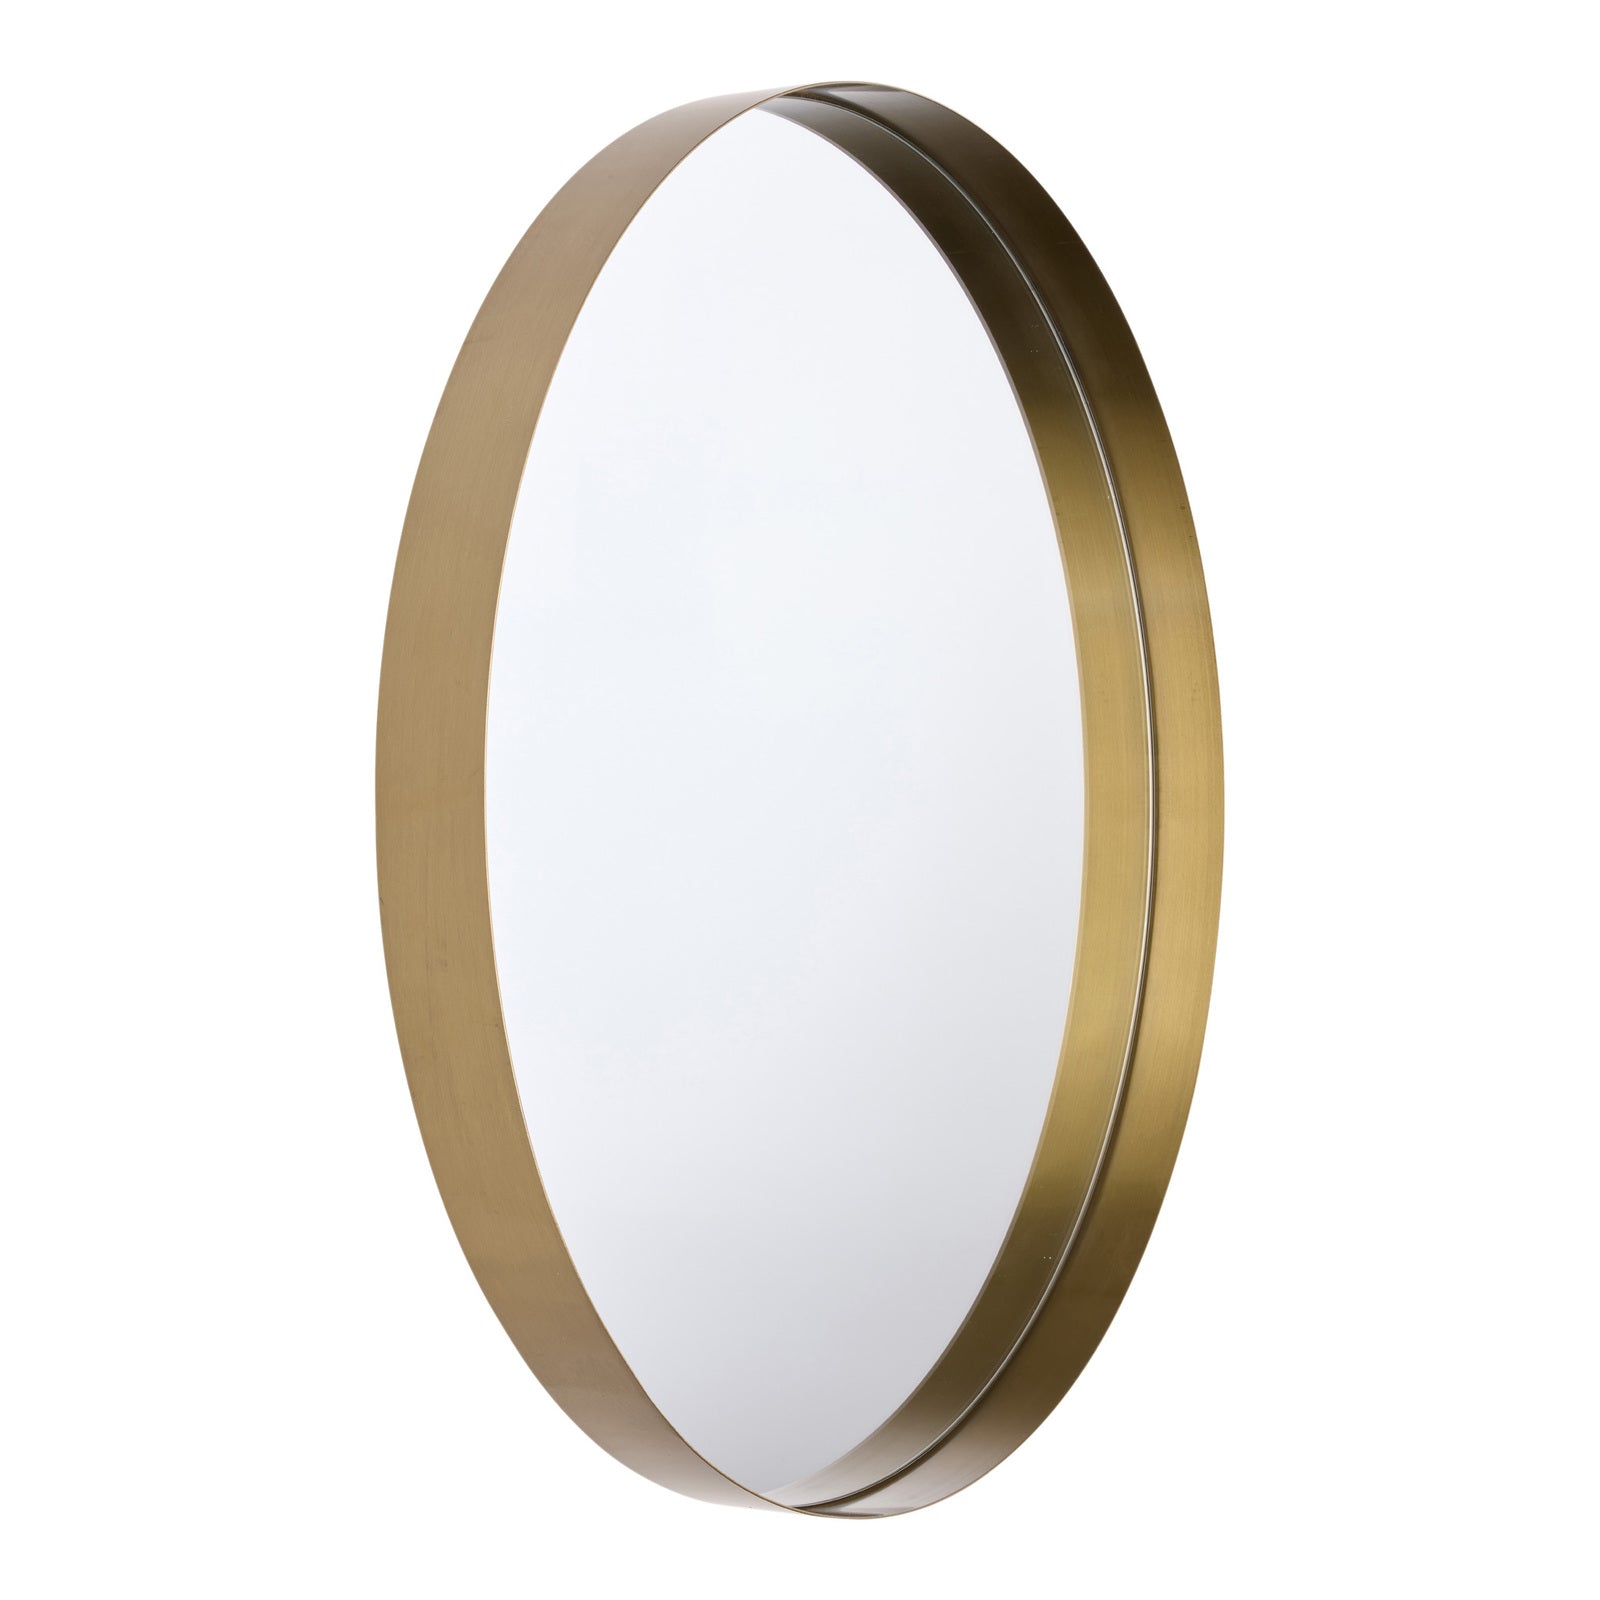 GEMMA 60cm Stainless Steel Mirror - Champagne Gold